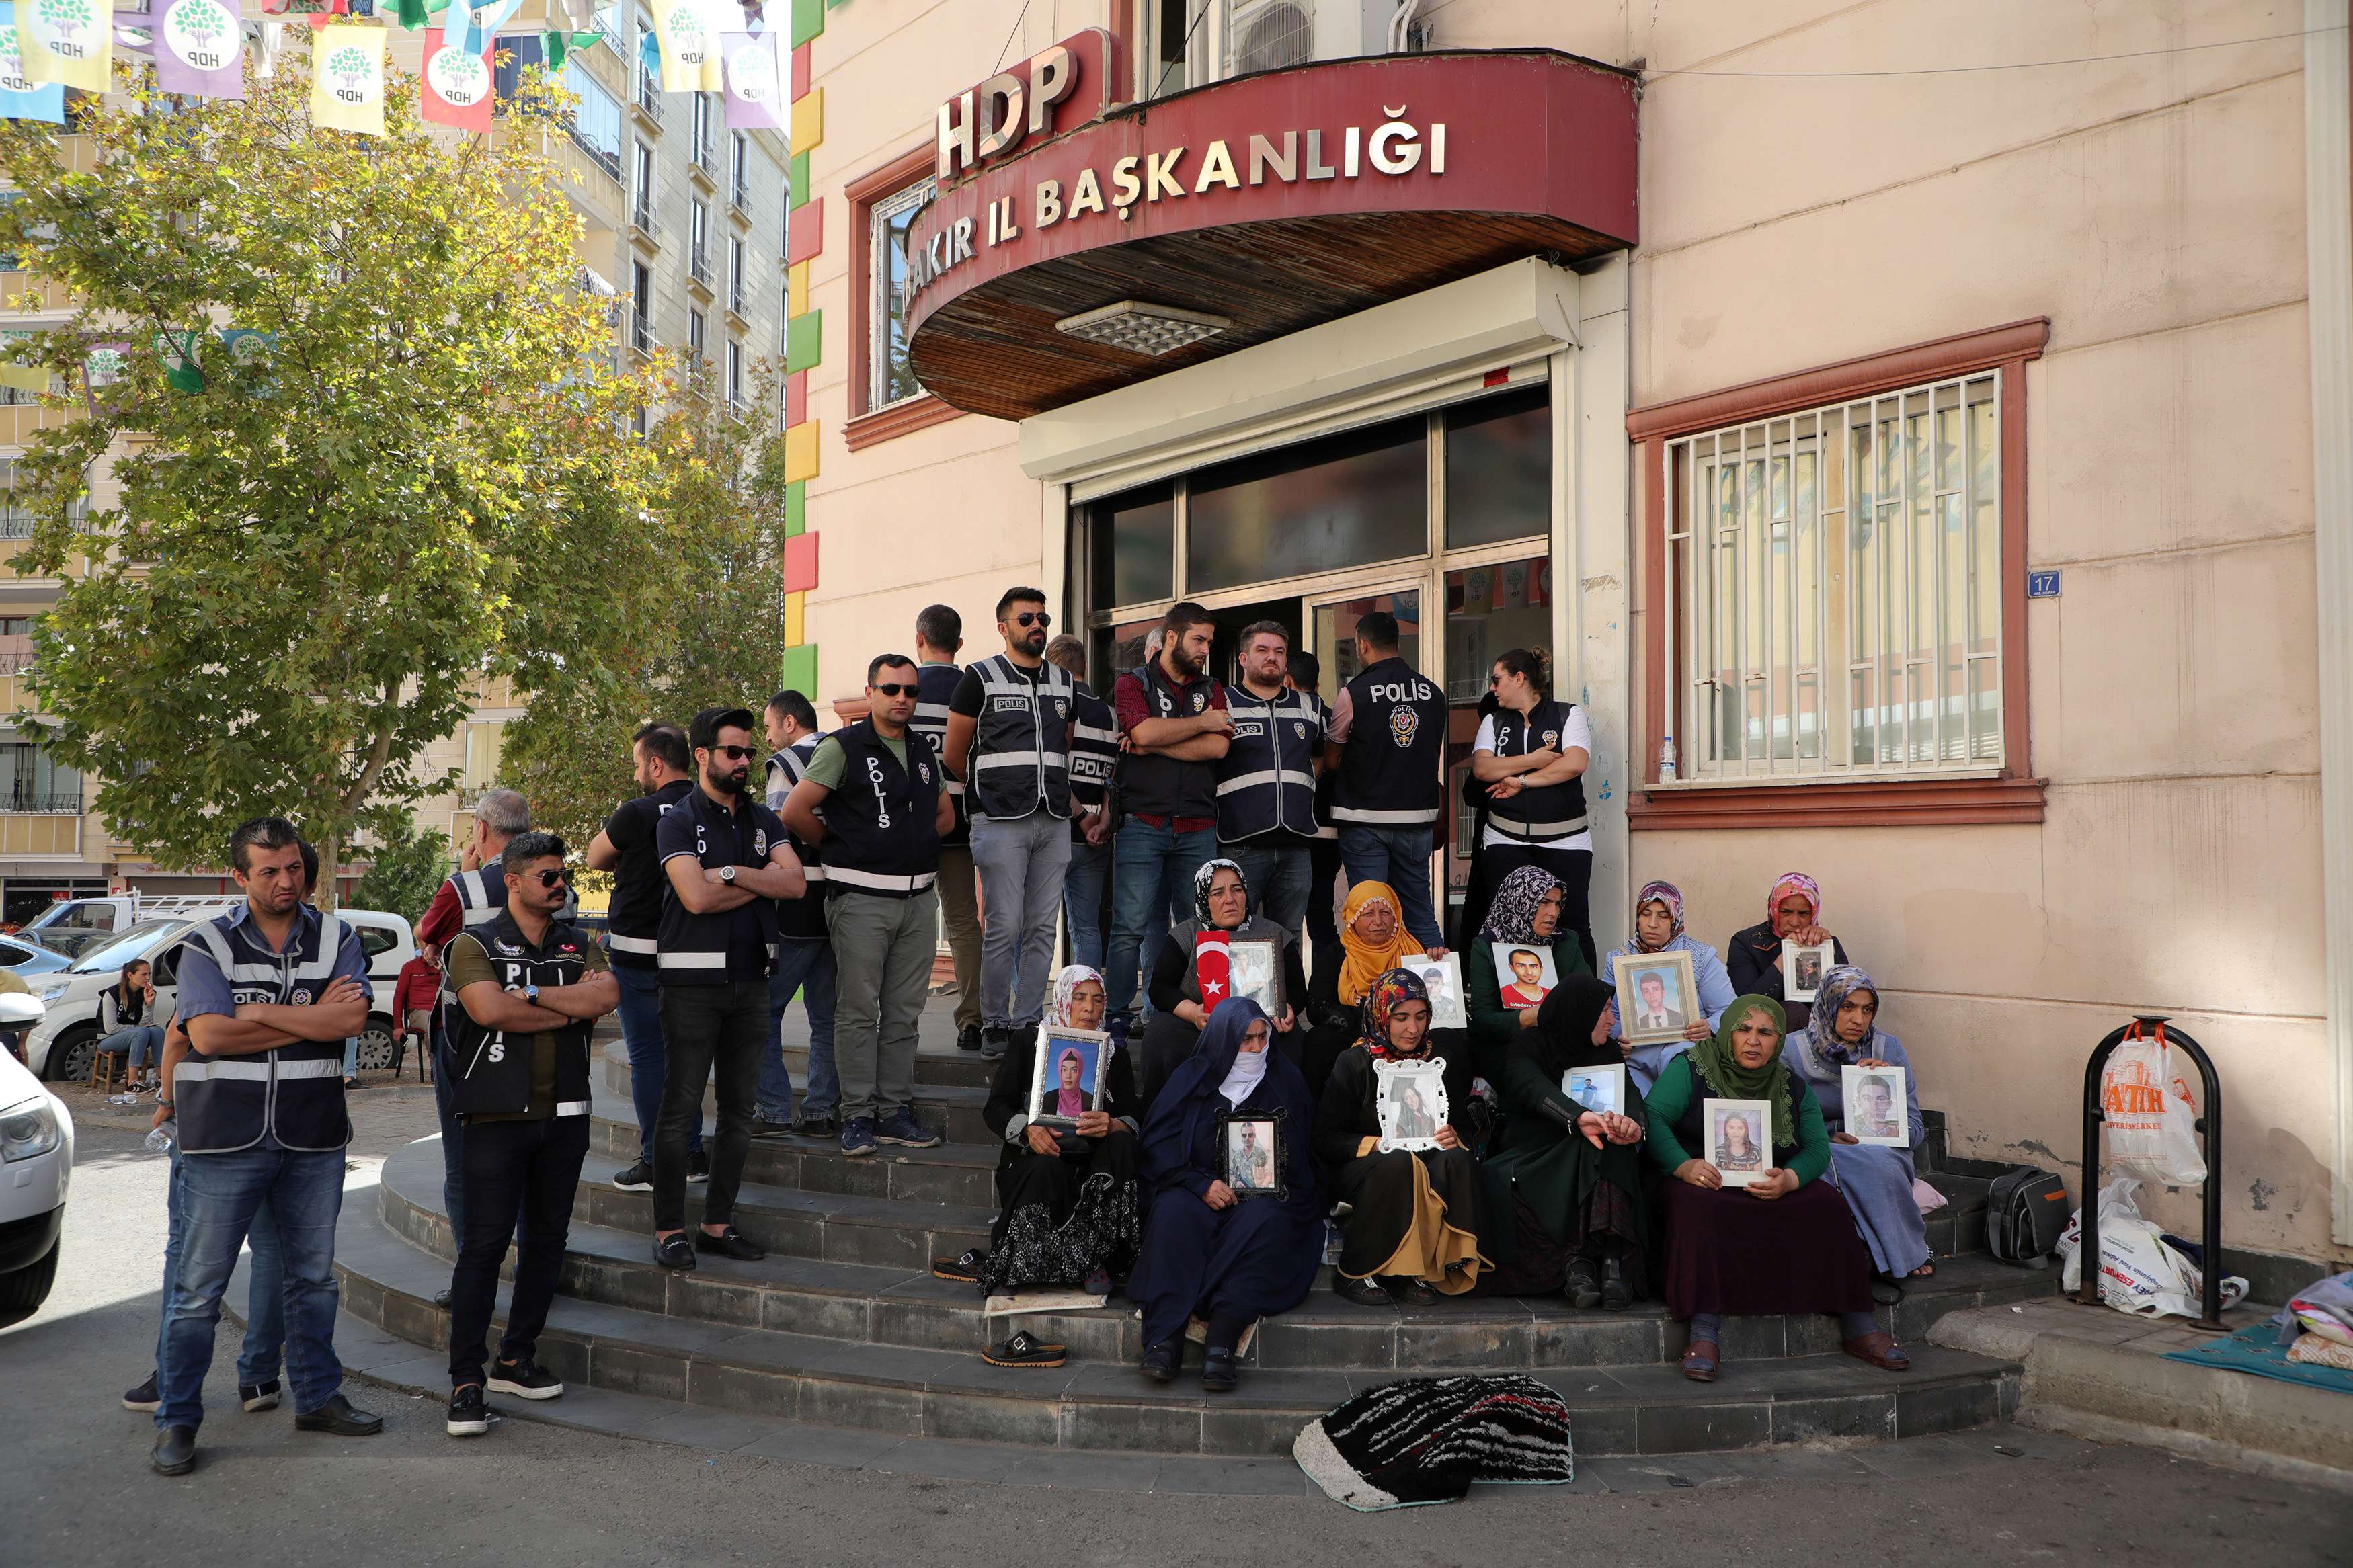 احتجاجات امام مقر حزب الشعوب الكردي تنظمها الدولة التركية لتشويه سمعة الحزب